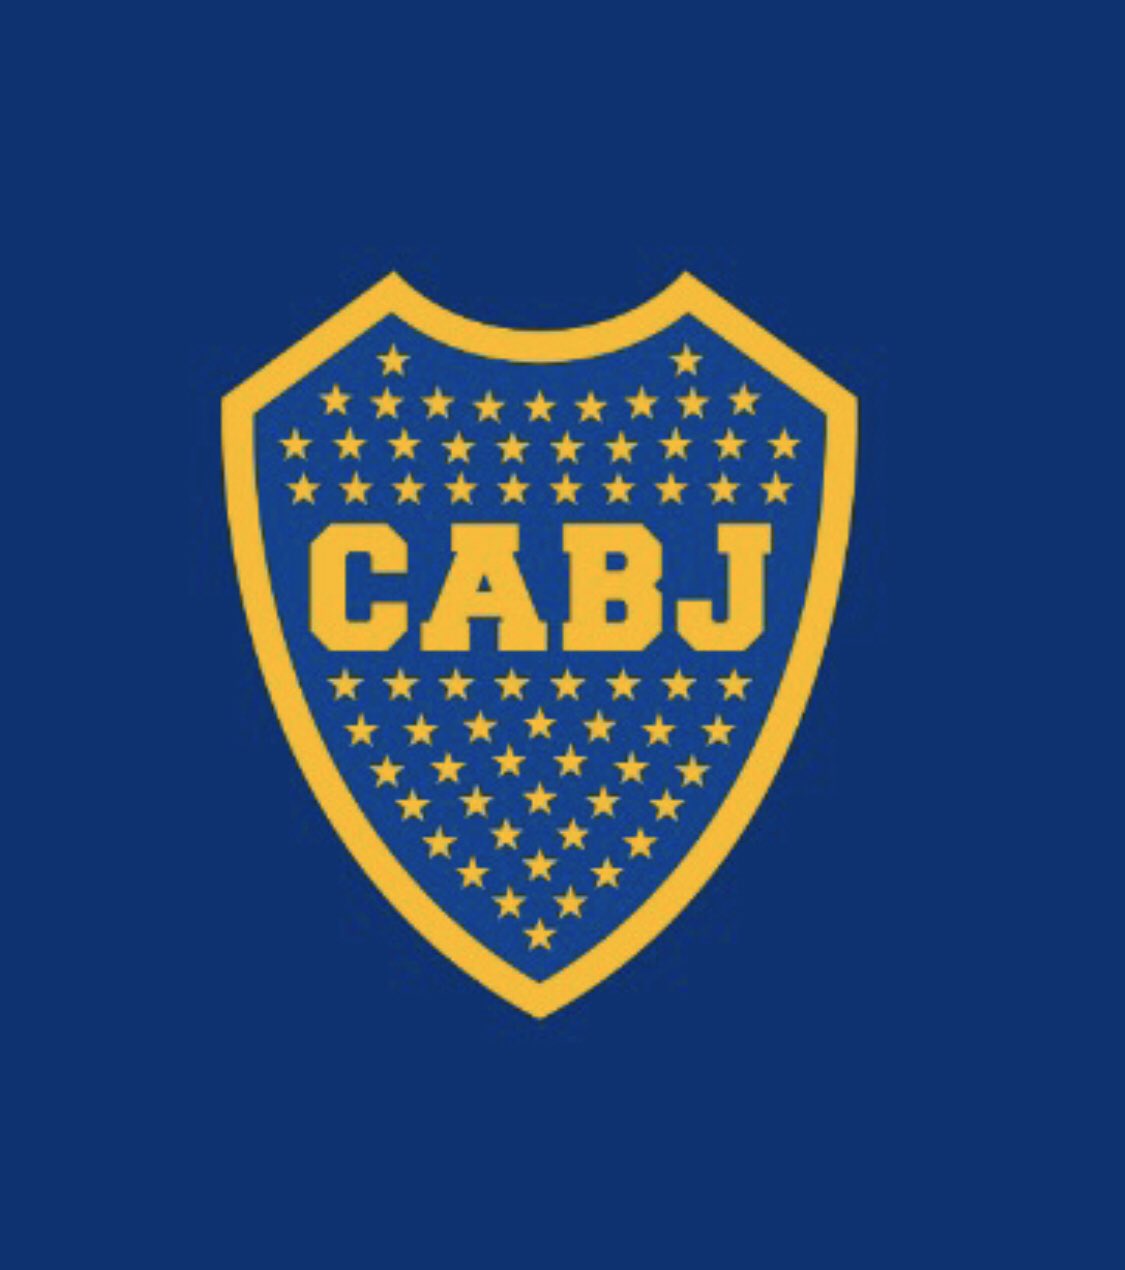 Club Atlético Boca Juniors de Azul